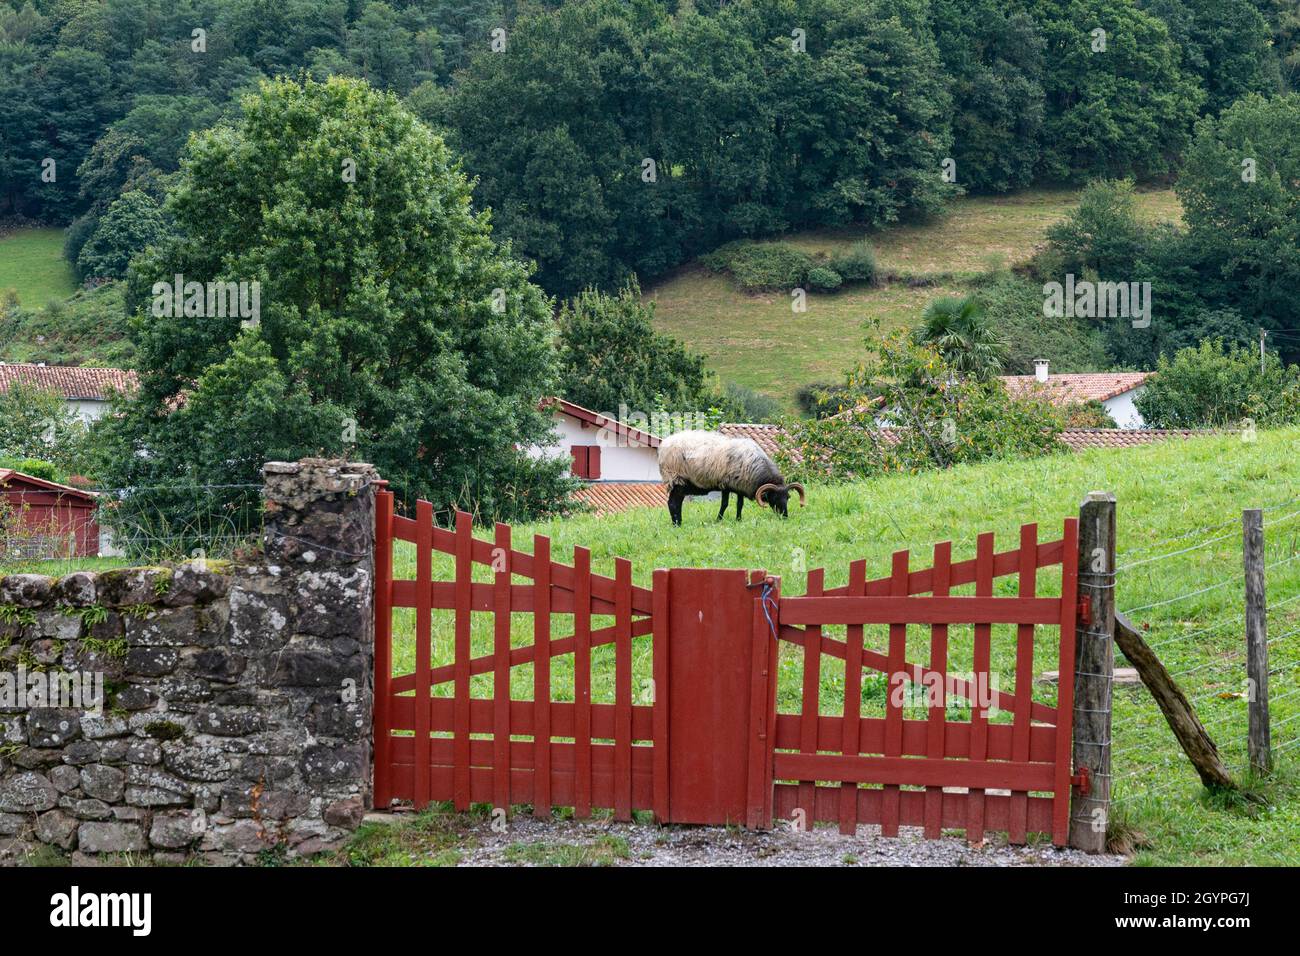 Moutons paître sur un pâturage dans le village rural de Bidarray; pays Basque, France Banque D'Images